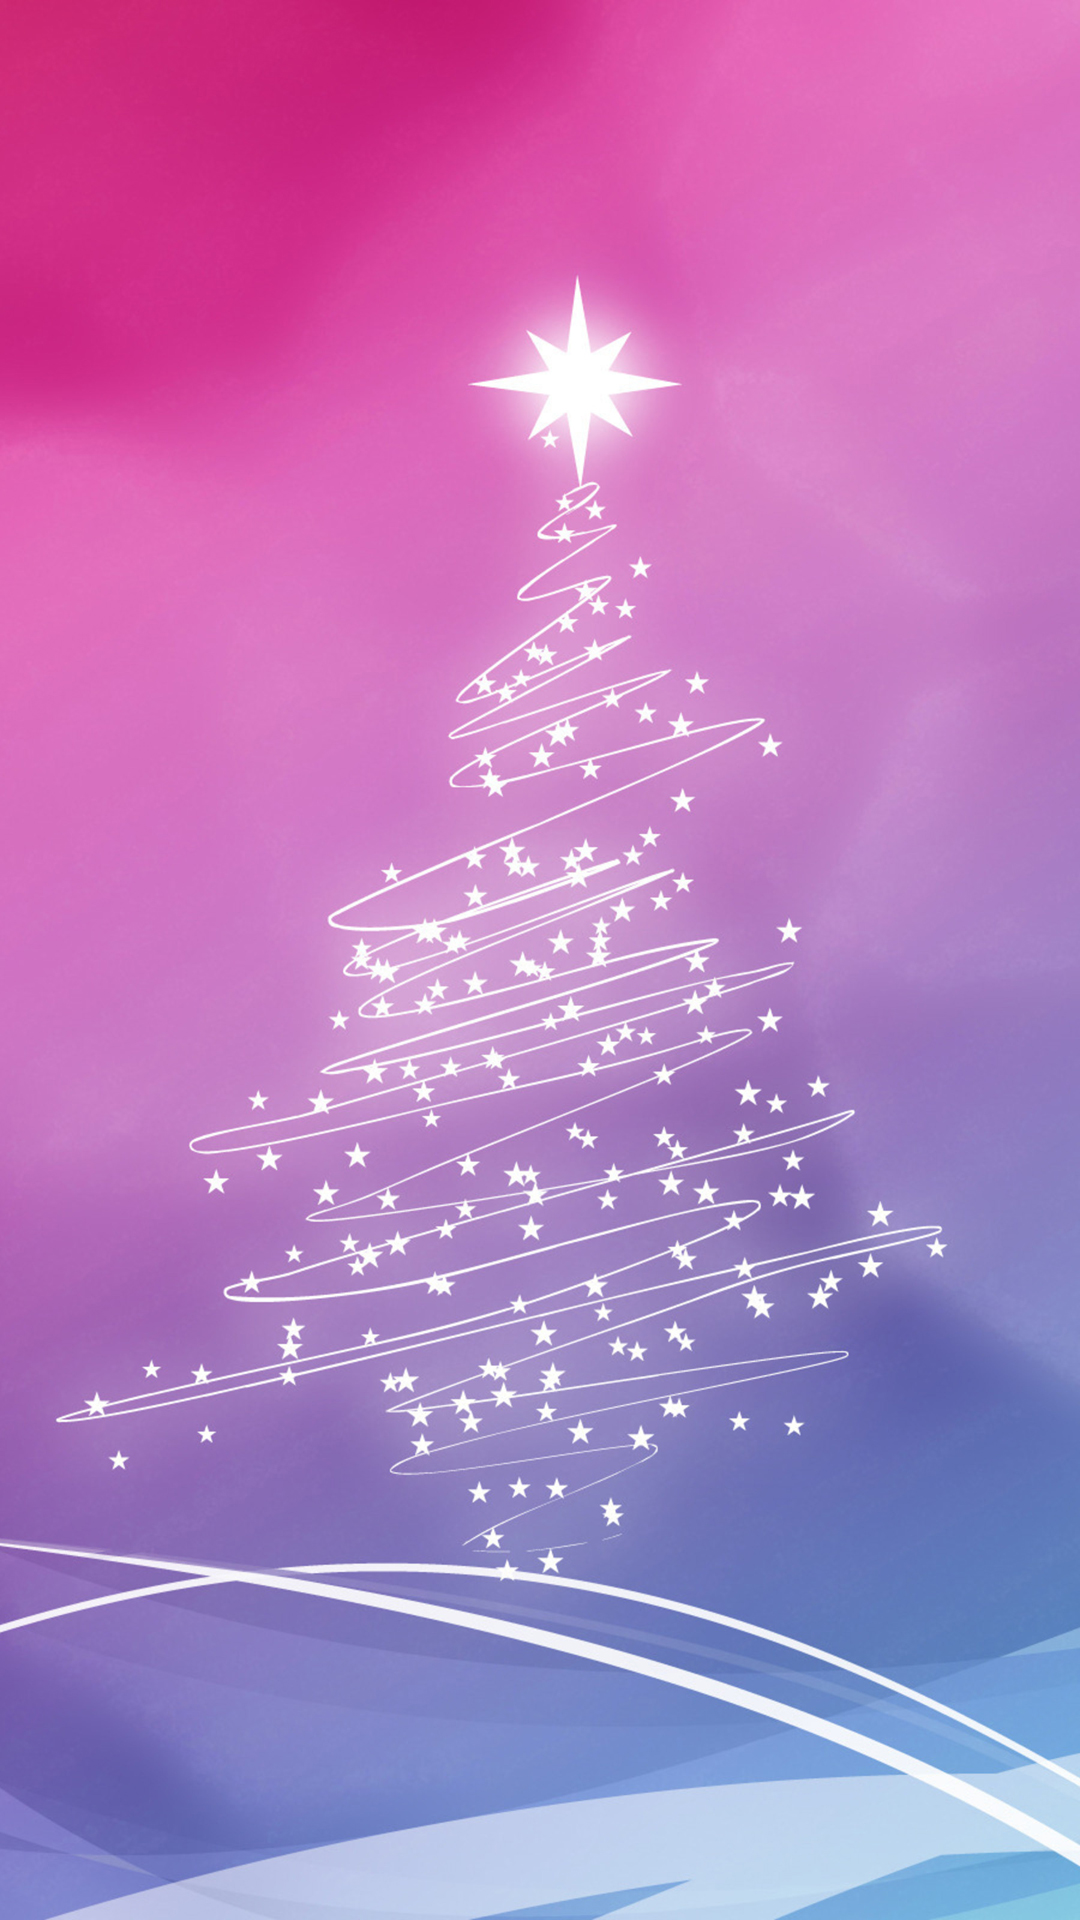 Sfondi Natalizi Iphone 6.Christmas Tree Iphone Wallpaper Hd